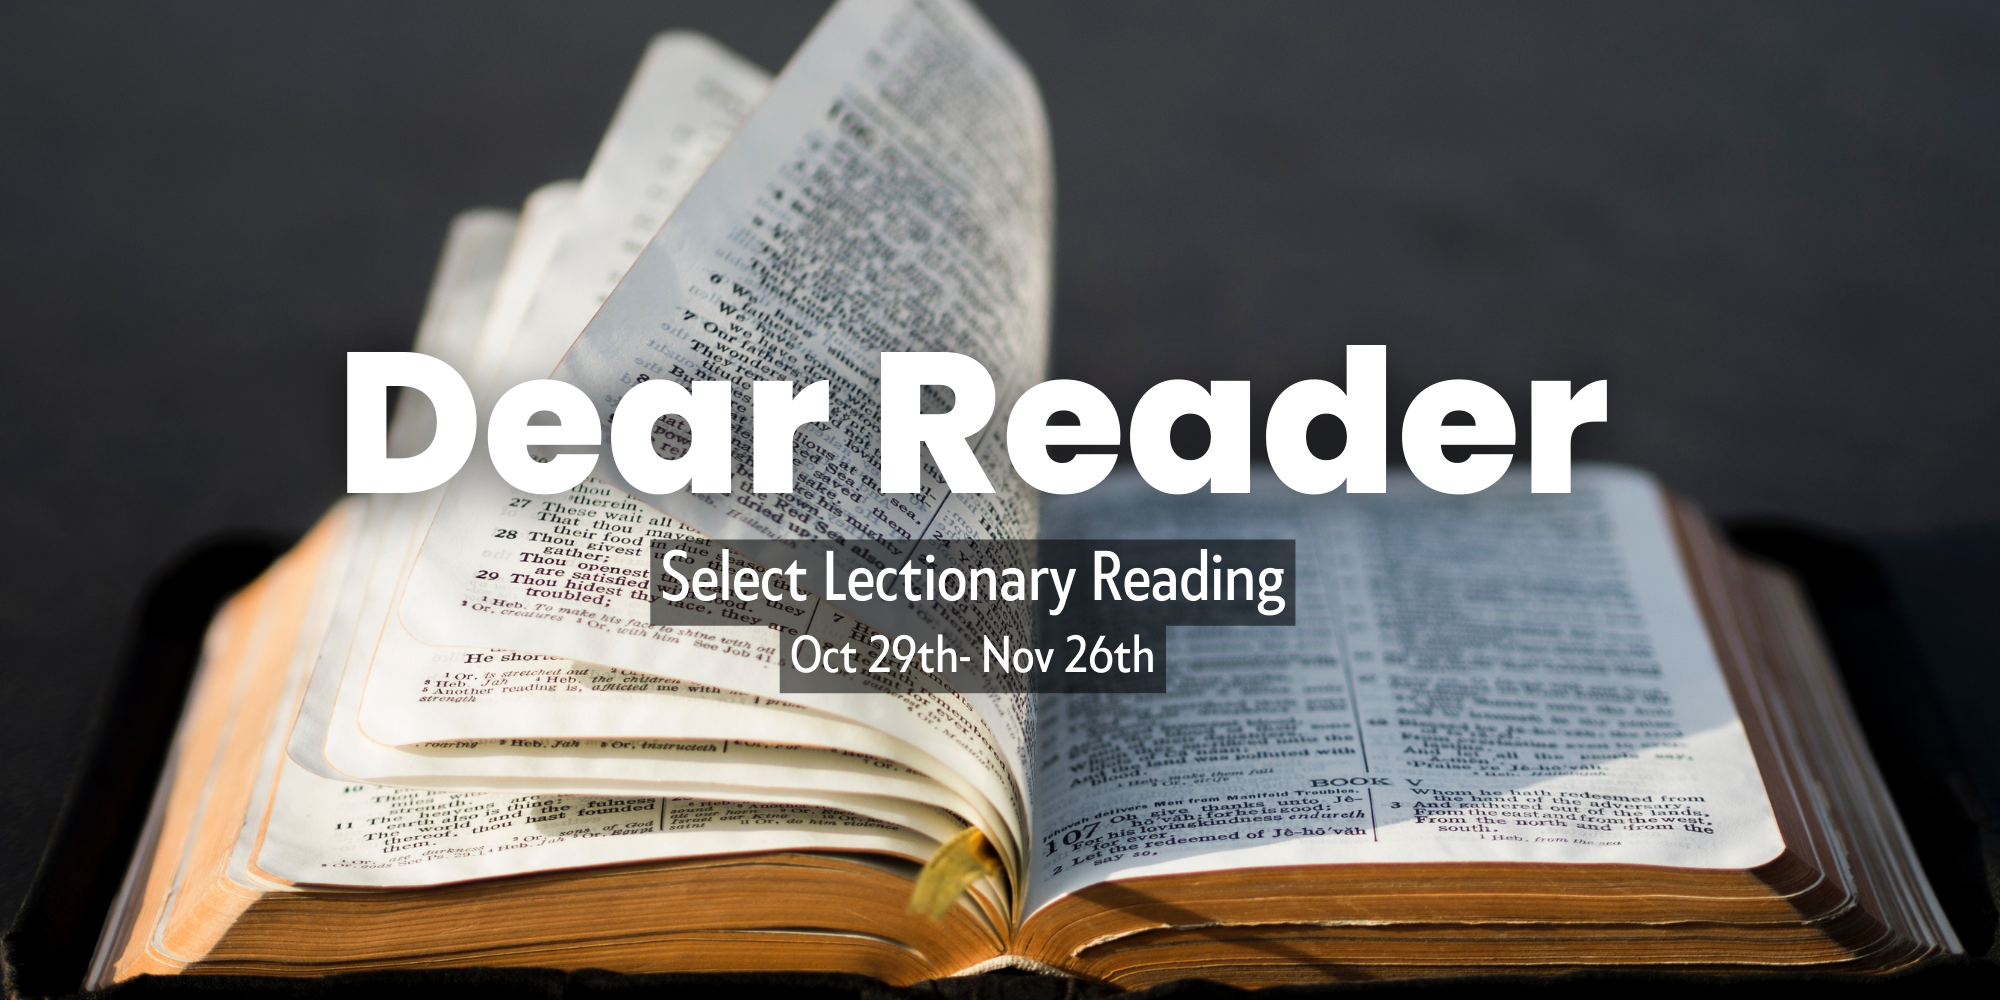 Dear Reader: Matthew 5:43-48